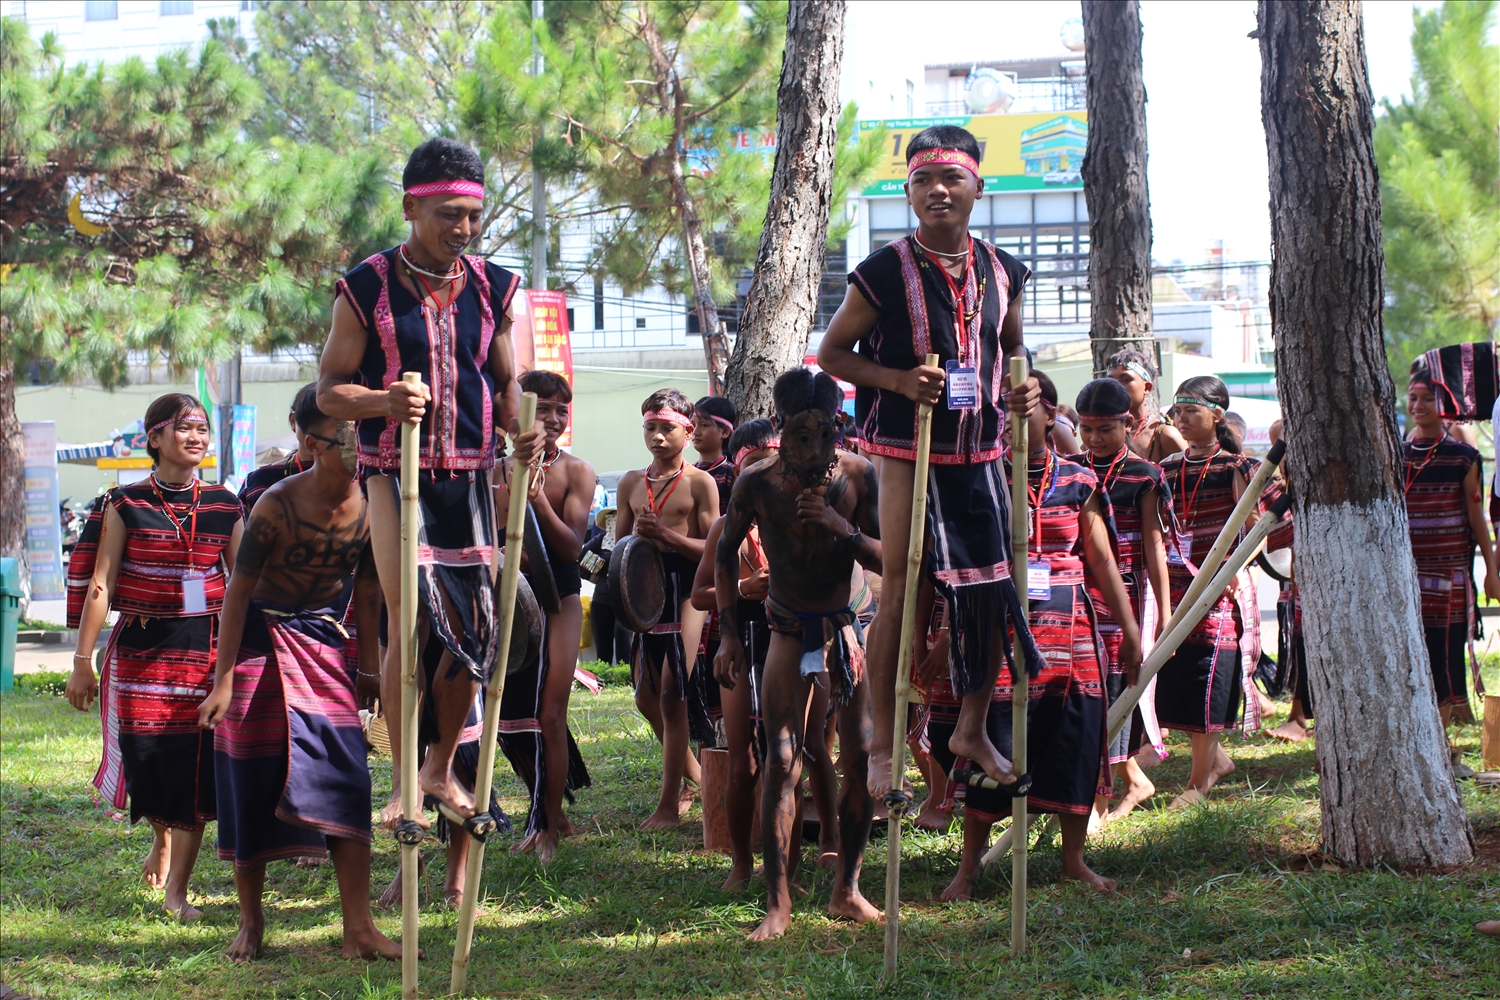 Dưới sự truyền dạy của những nghệ nhân đánh chiêng ở làng mà đội cồng chiêng nhí của làng Kte-Chăng (xã Đak Song, huyện Kông Chro) đã có thể tham gia nhiều hoạt động văn hóa lớn nhỏ trong toàn tỉnh.